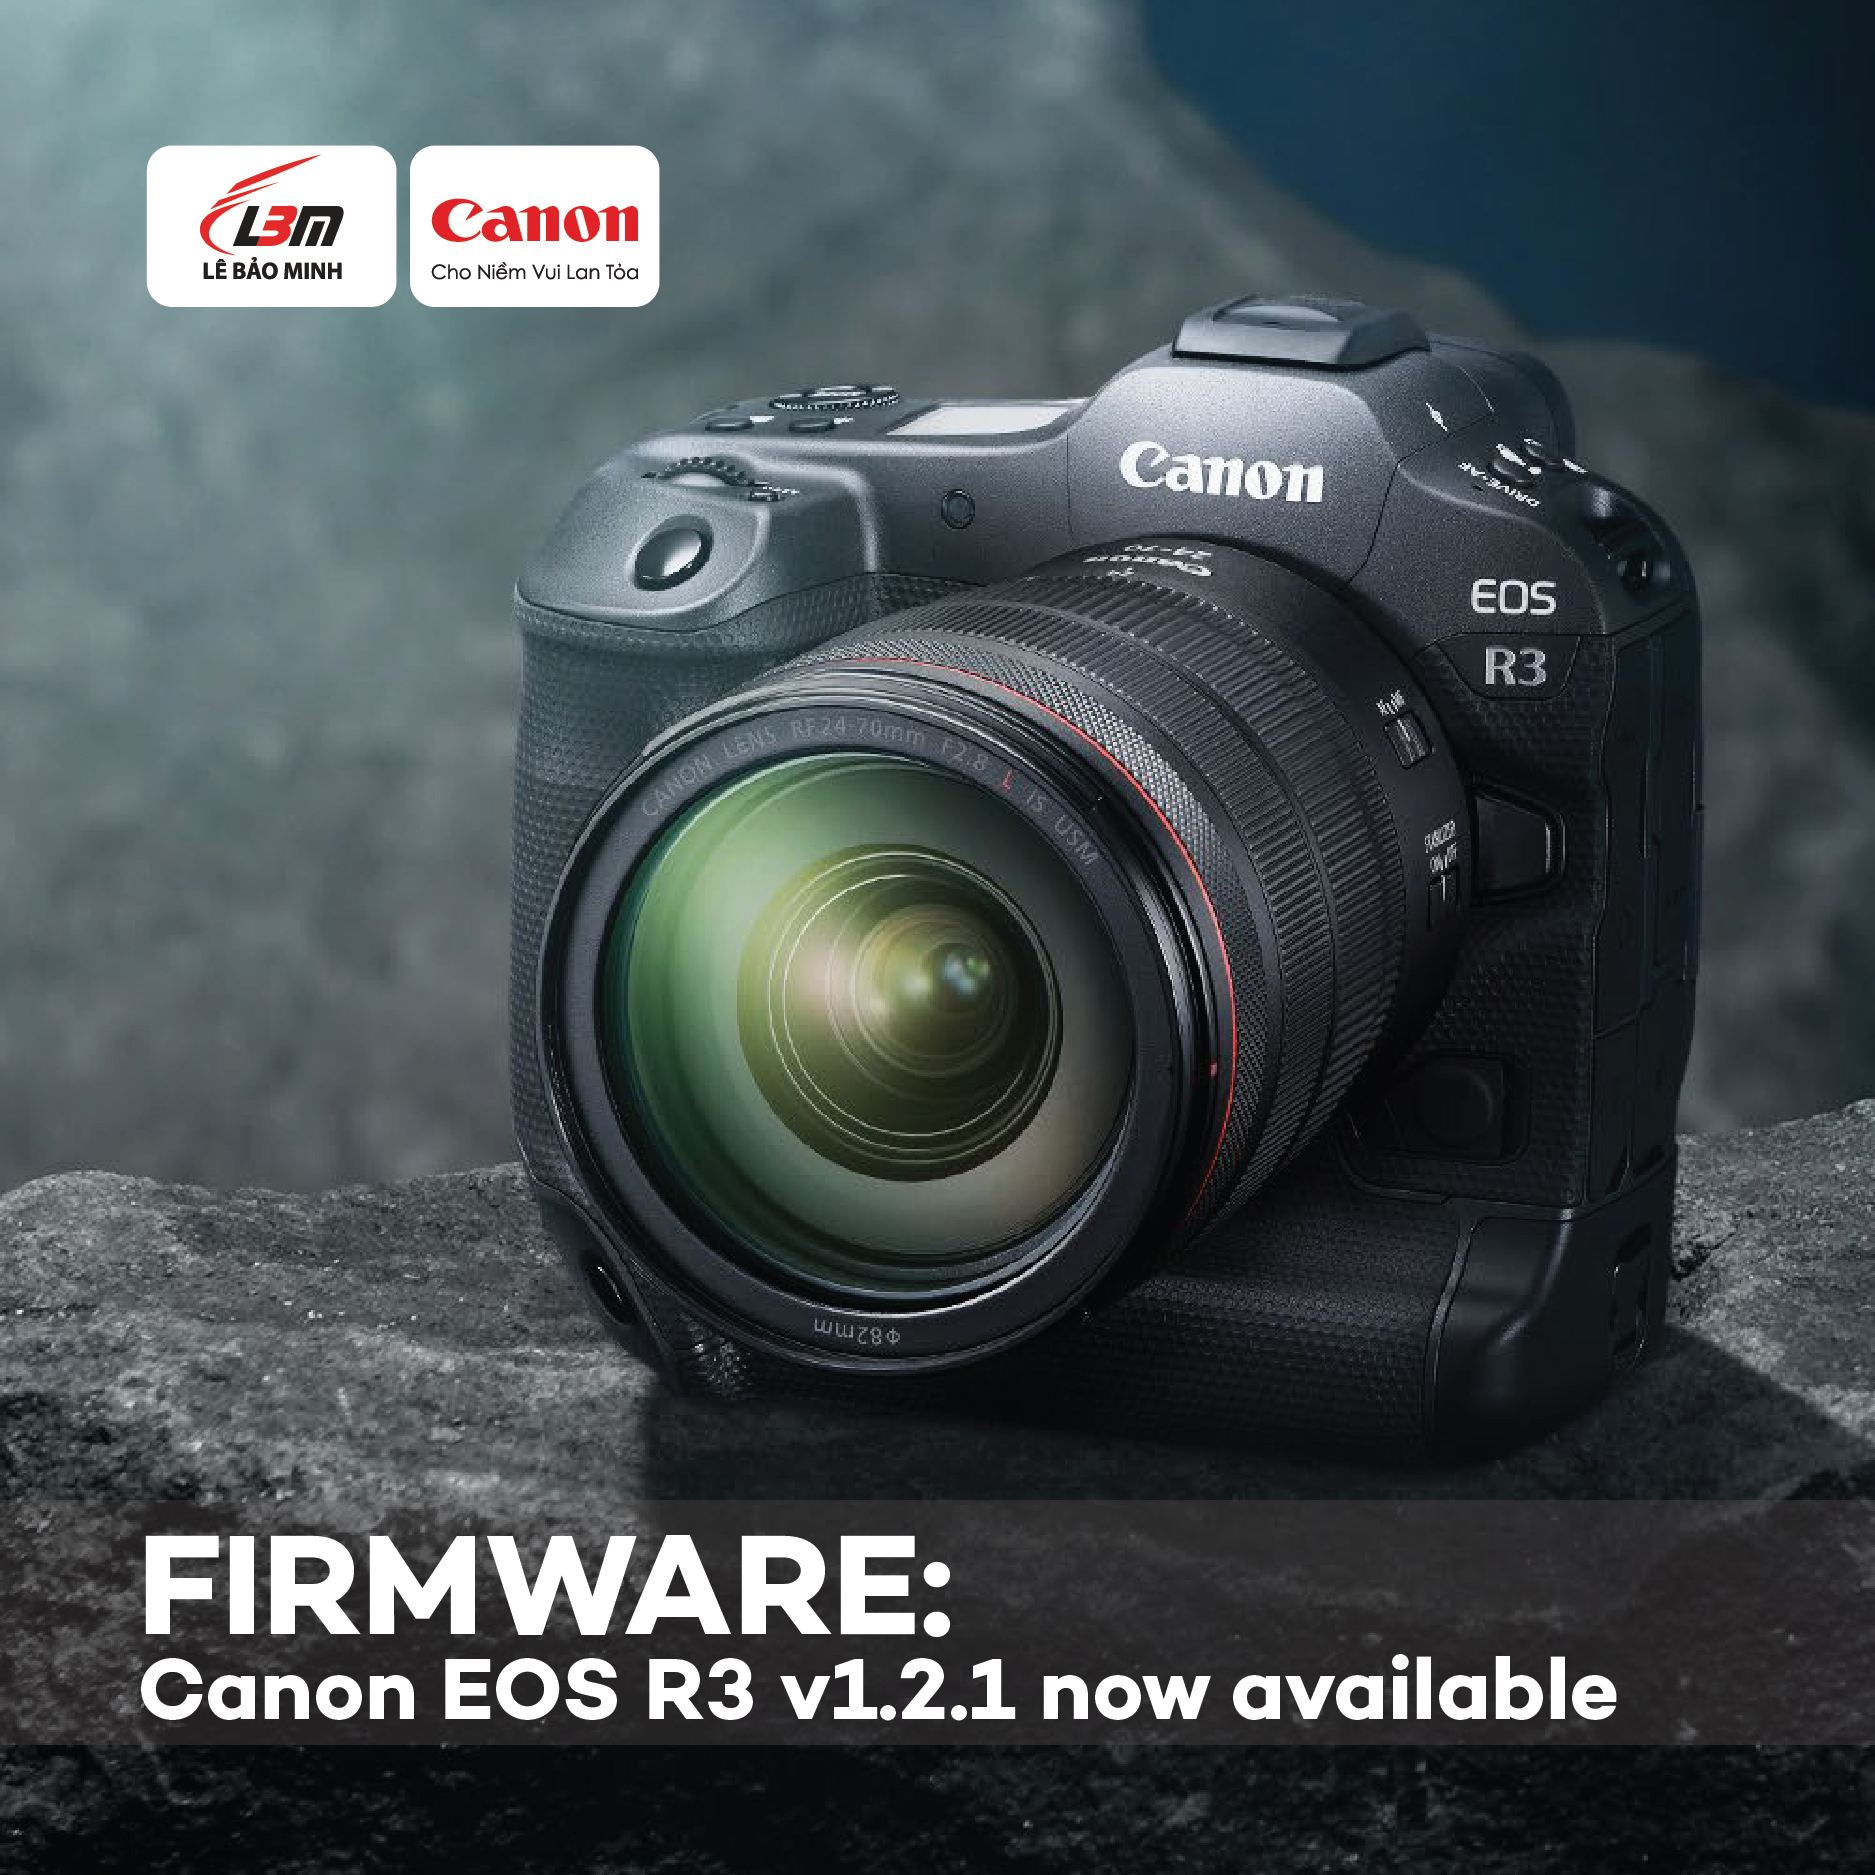 Canon công bố firmware 1.2.1 cho EOS R3 thay cho phiên bản 1.2.0 bị lỗi